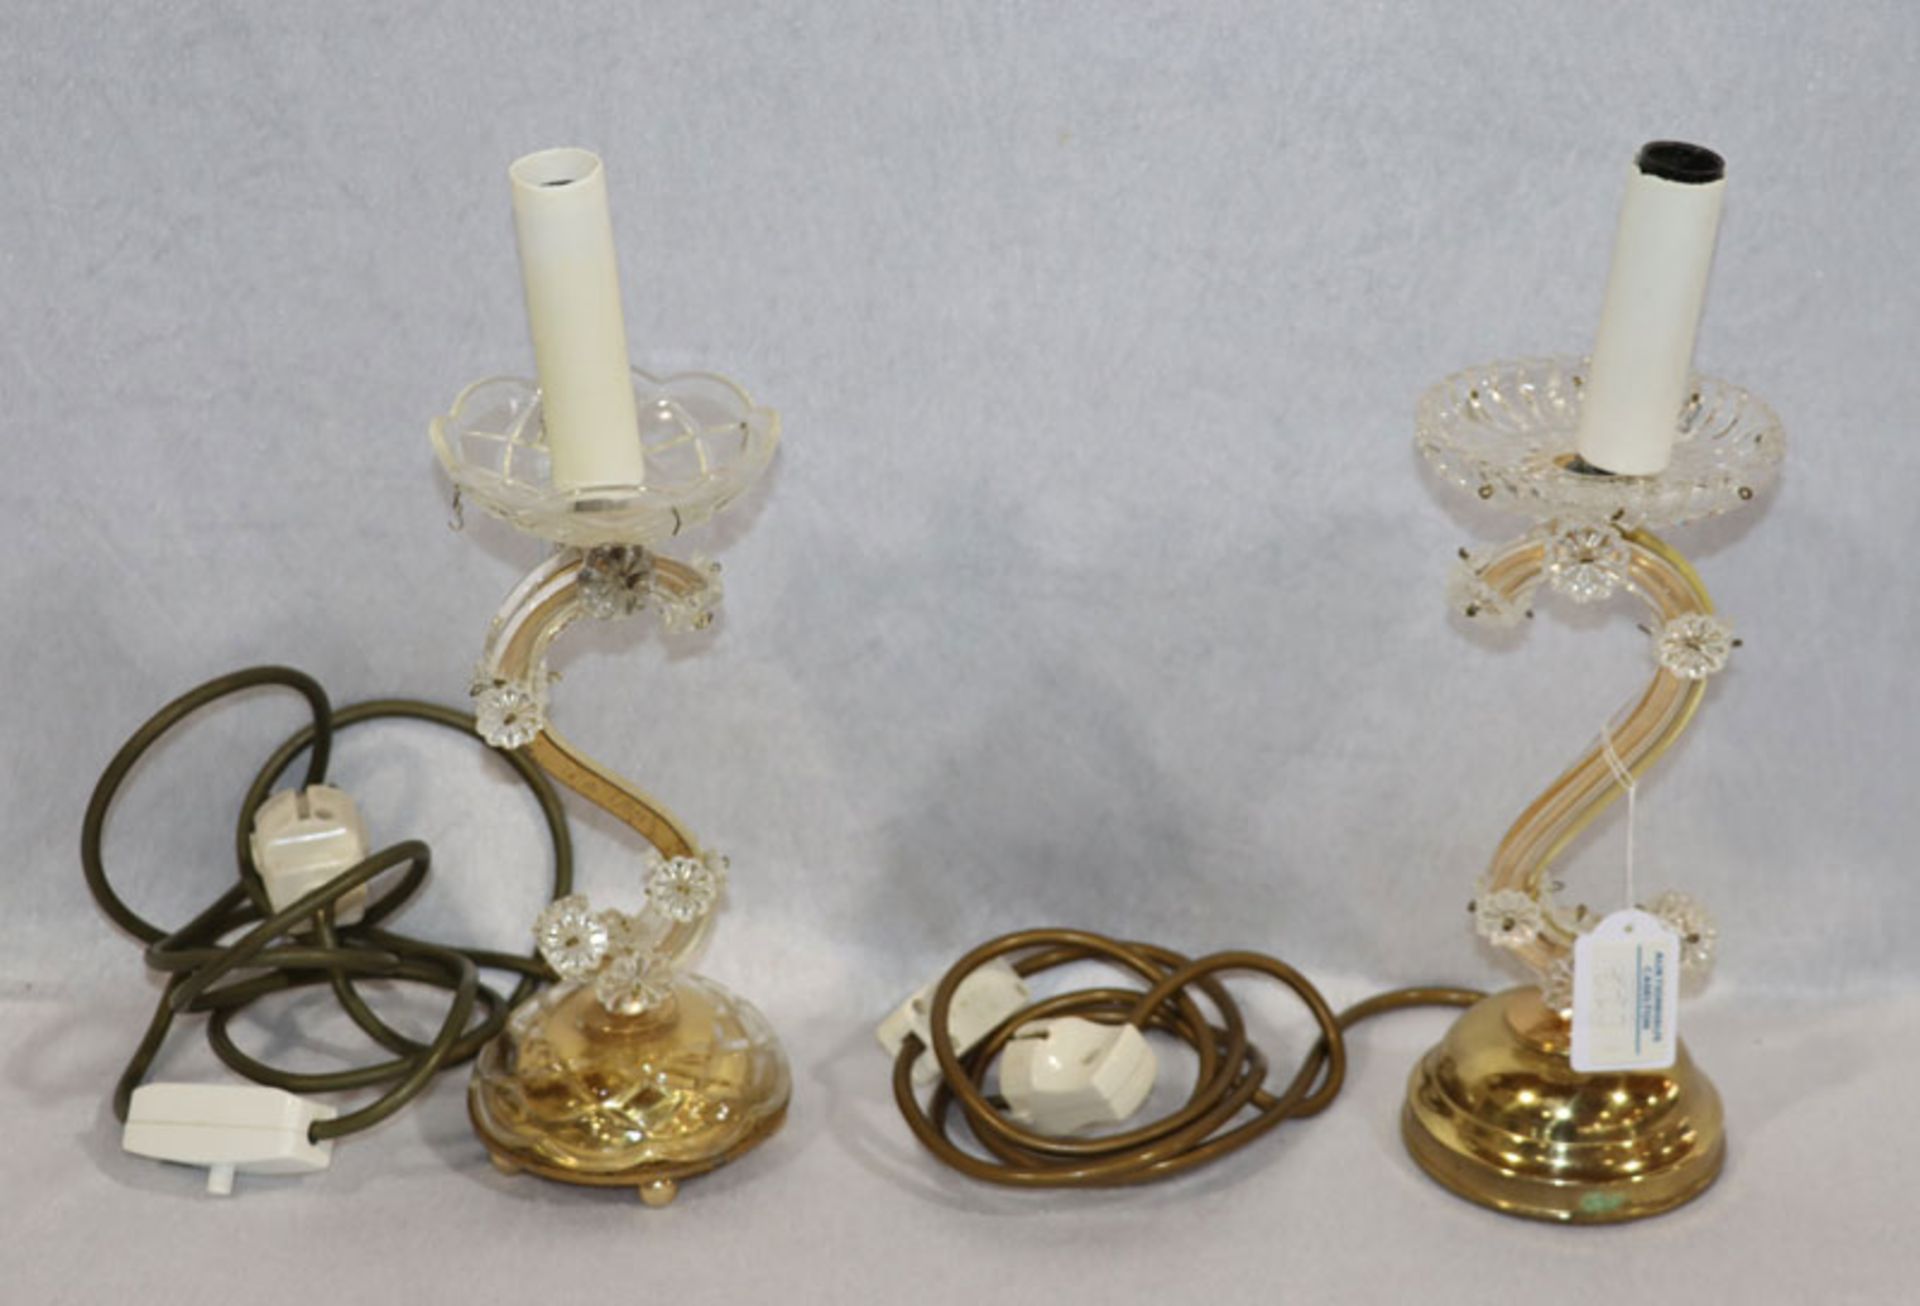 Paar Glas/Messing Tischlampen mit Glasprismen, H 32 cm, D 11 cm, Gebrauchsspuren, nicht komplett,